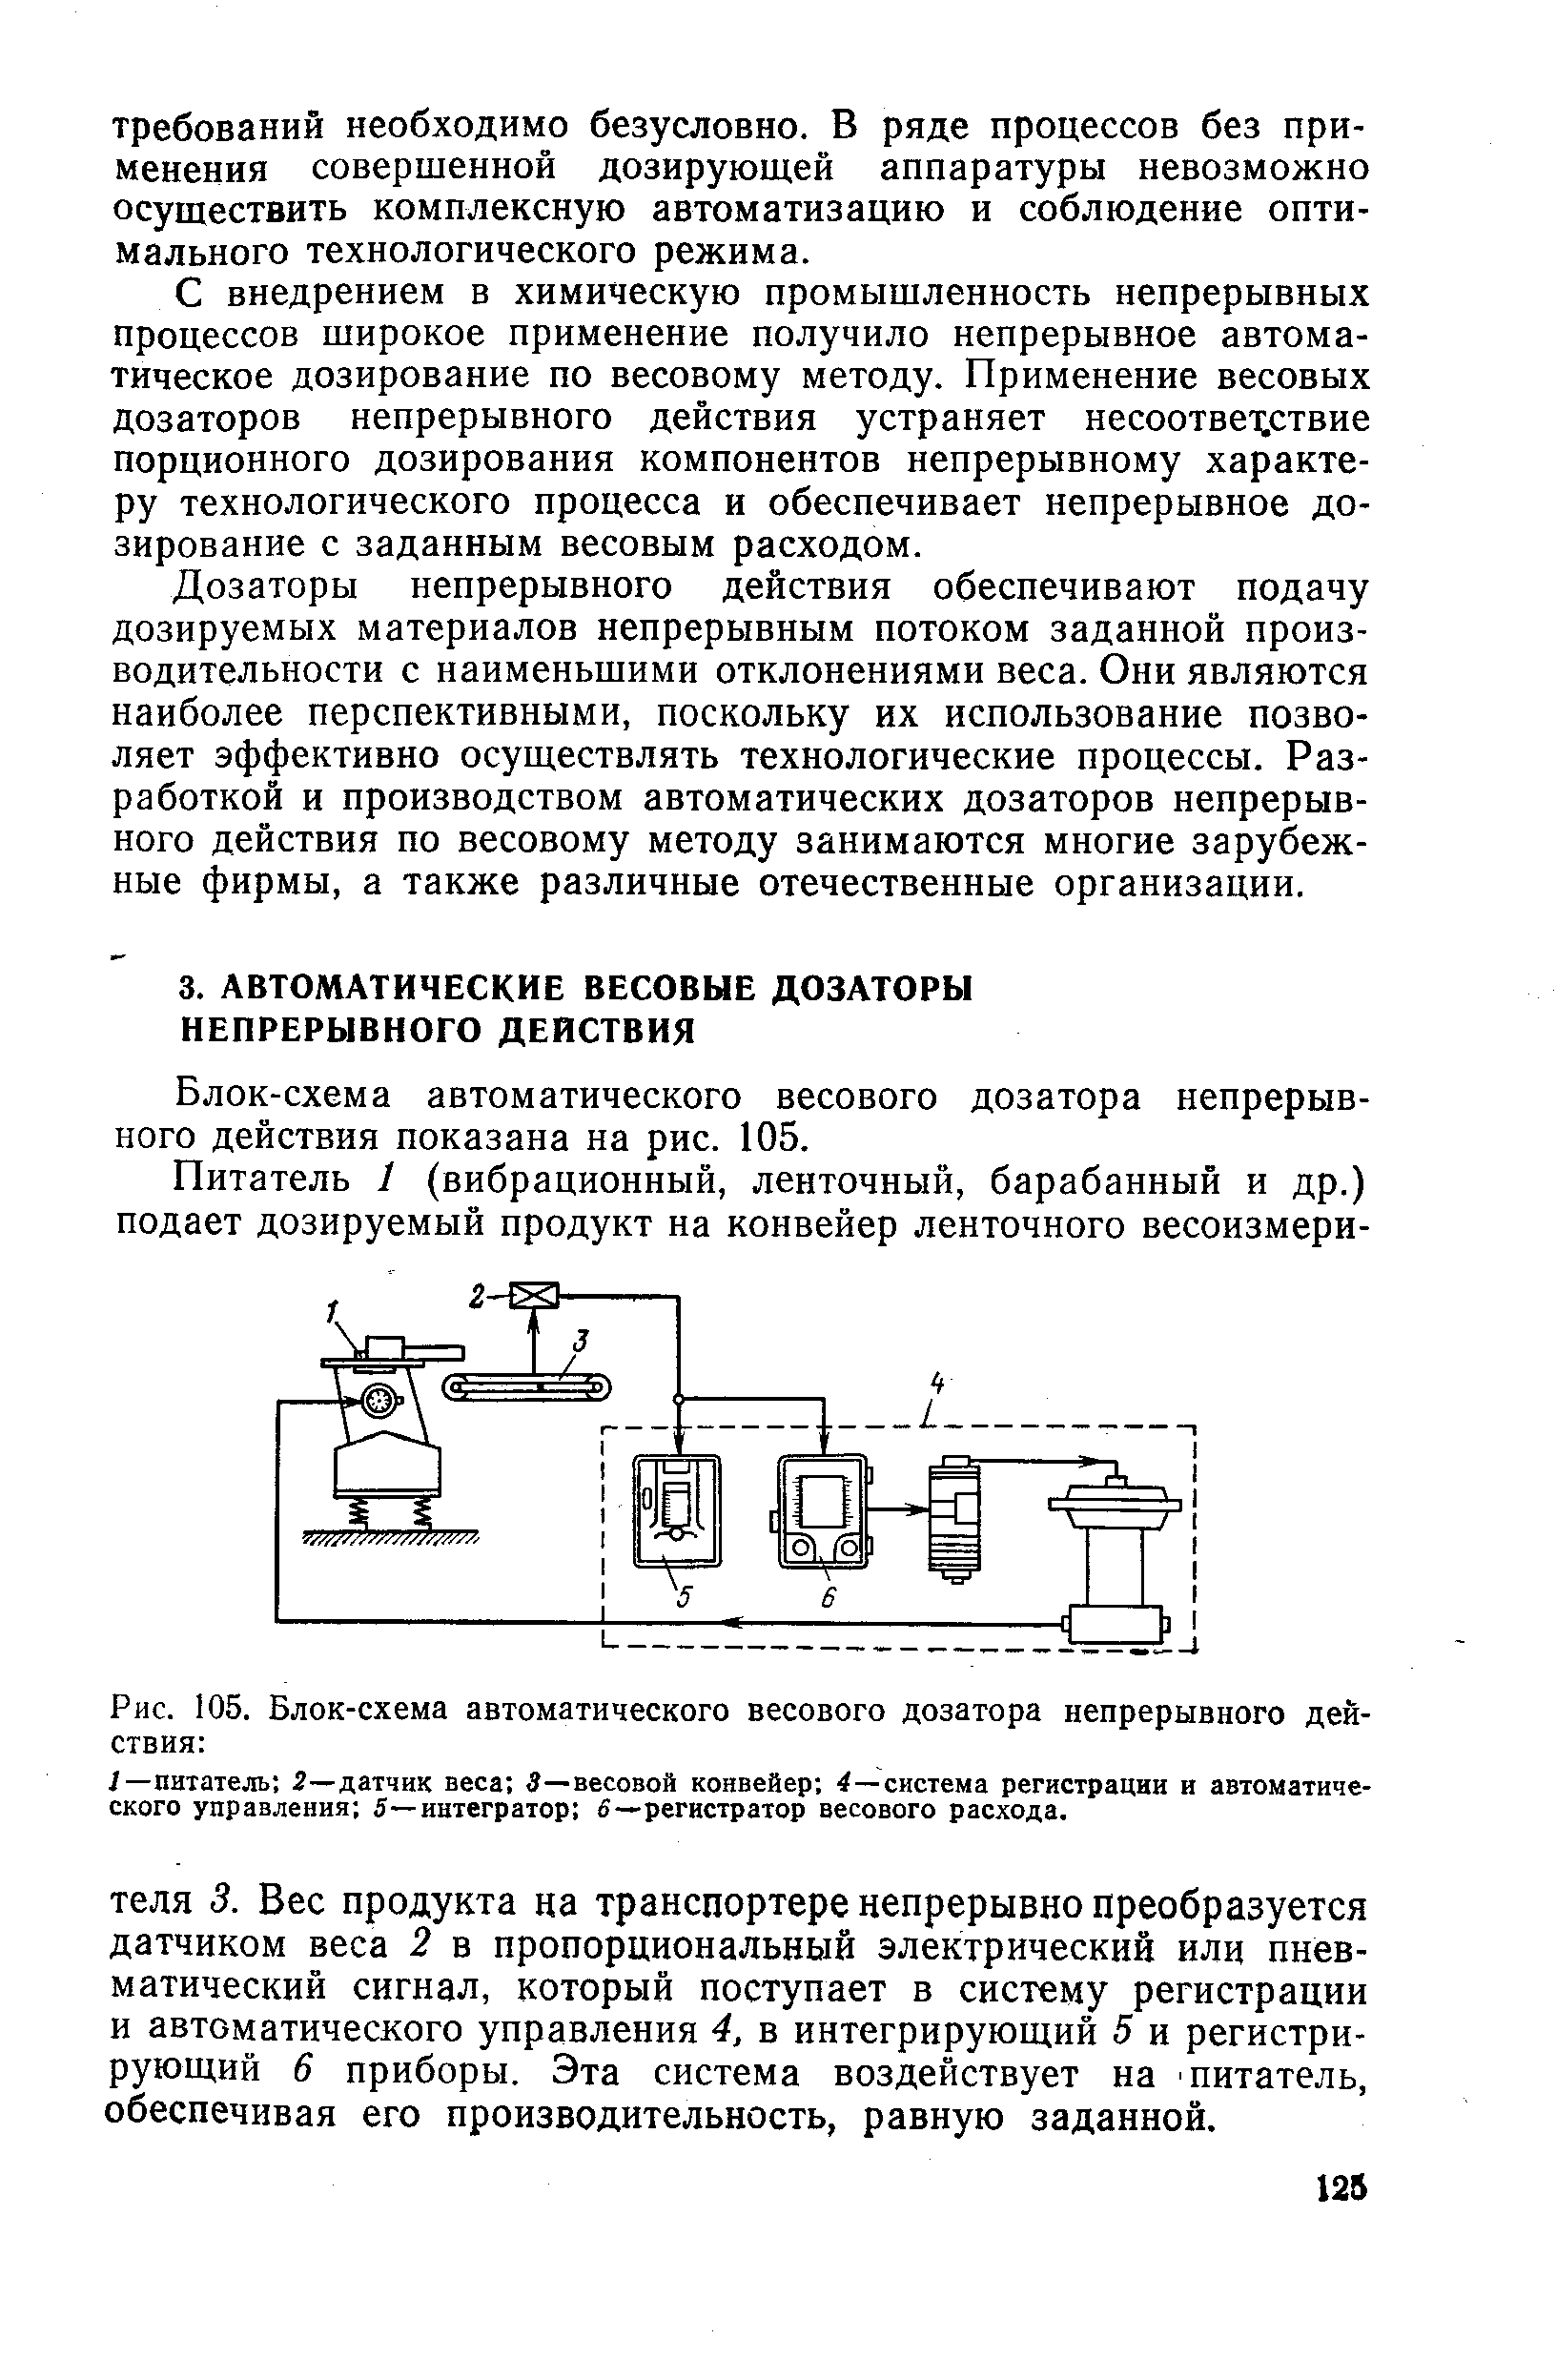 Блок-схема автоматического весового дозатора непрерывного действия показана на рис. 105.